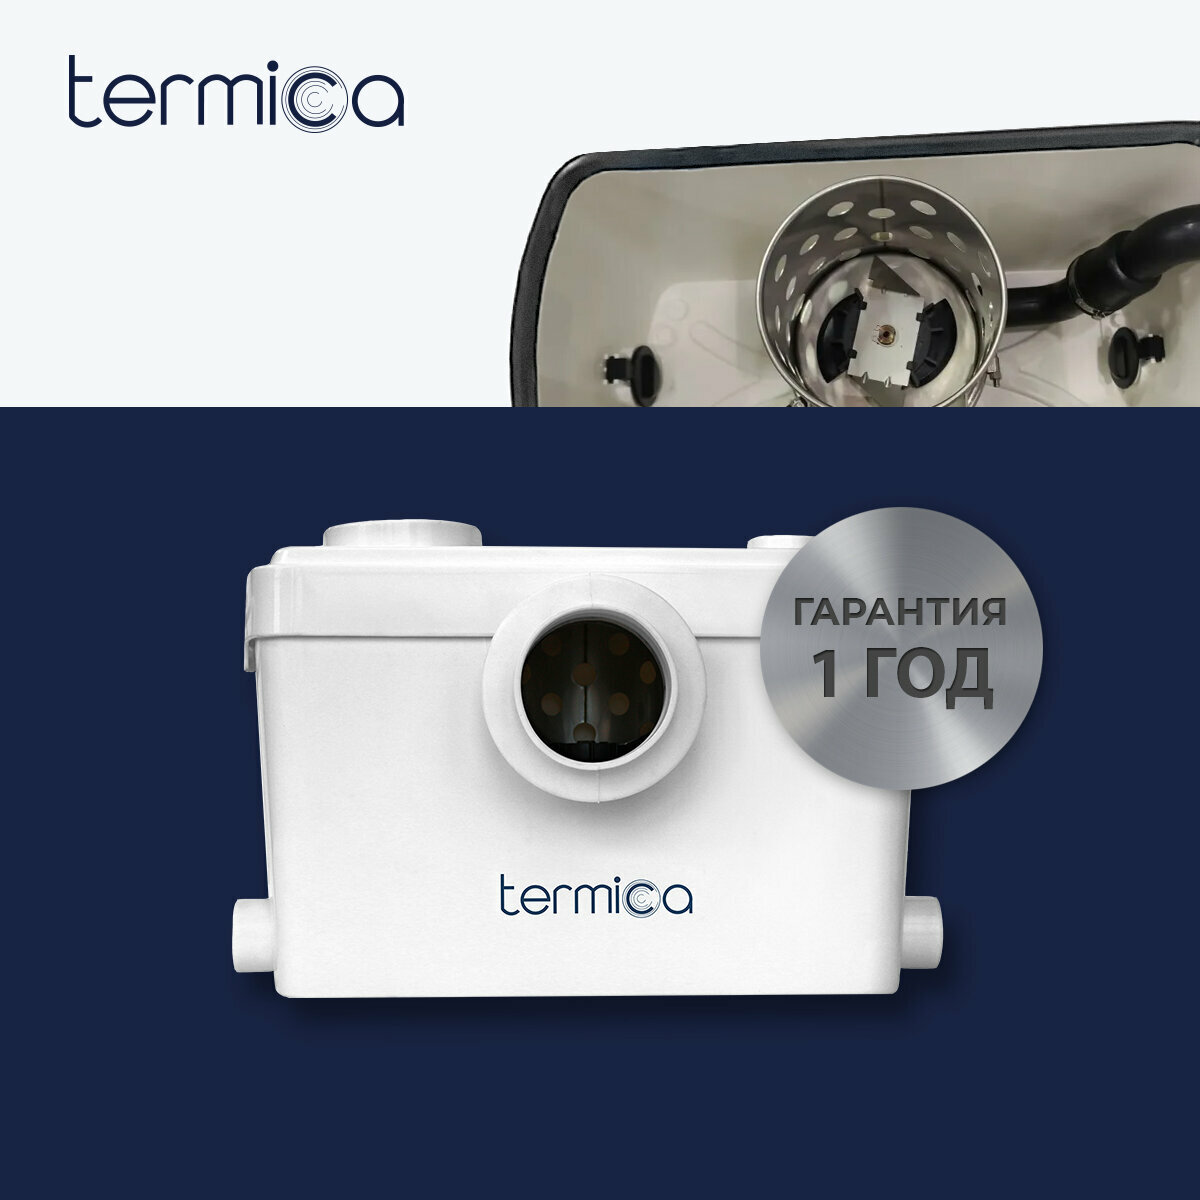 Канализационная установка Termica Compact Lift 600